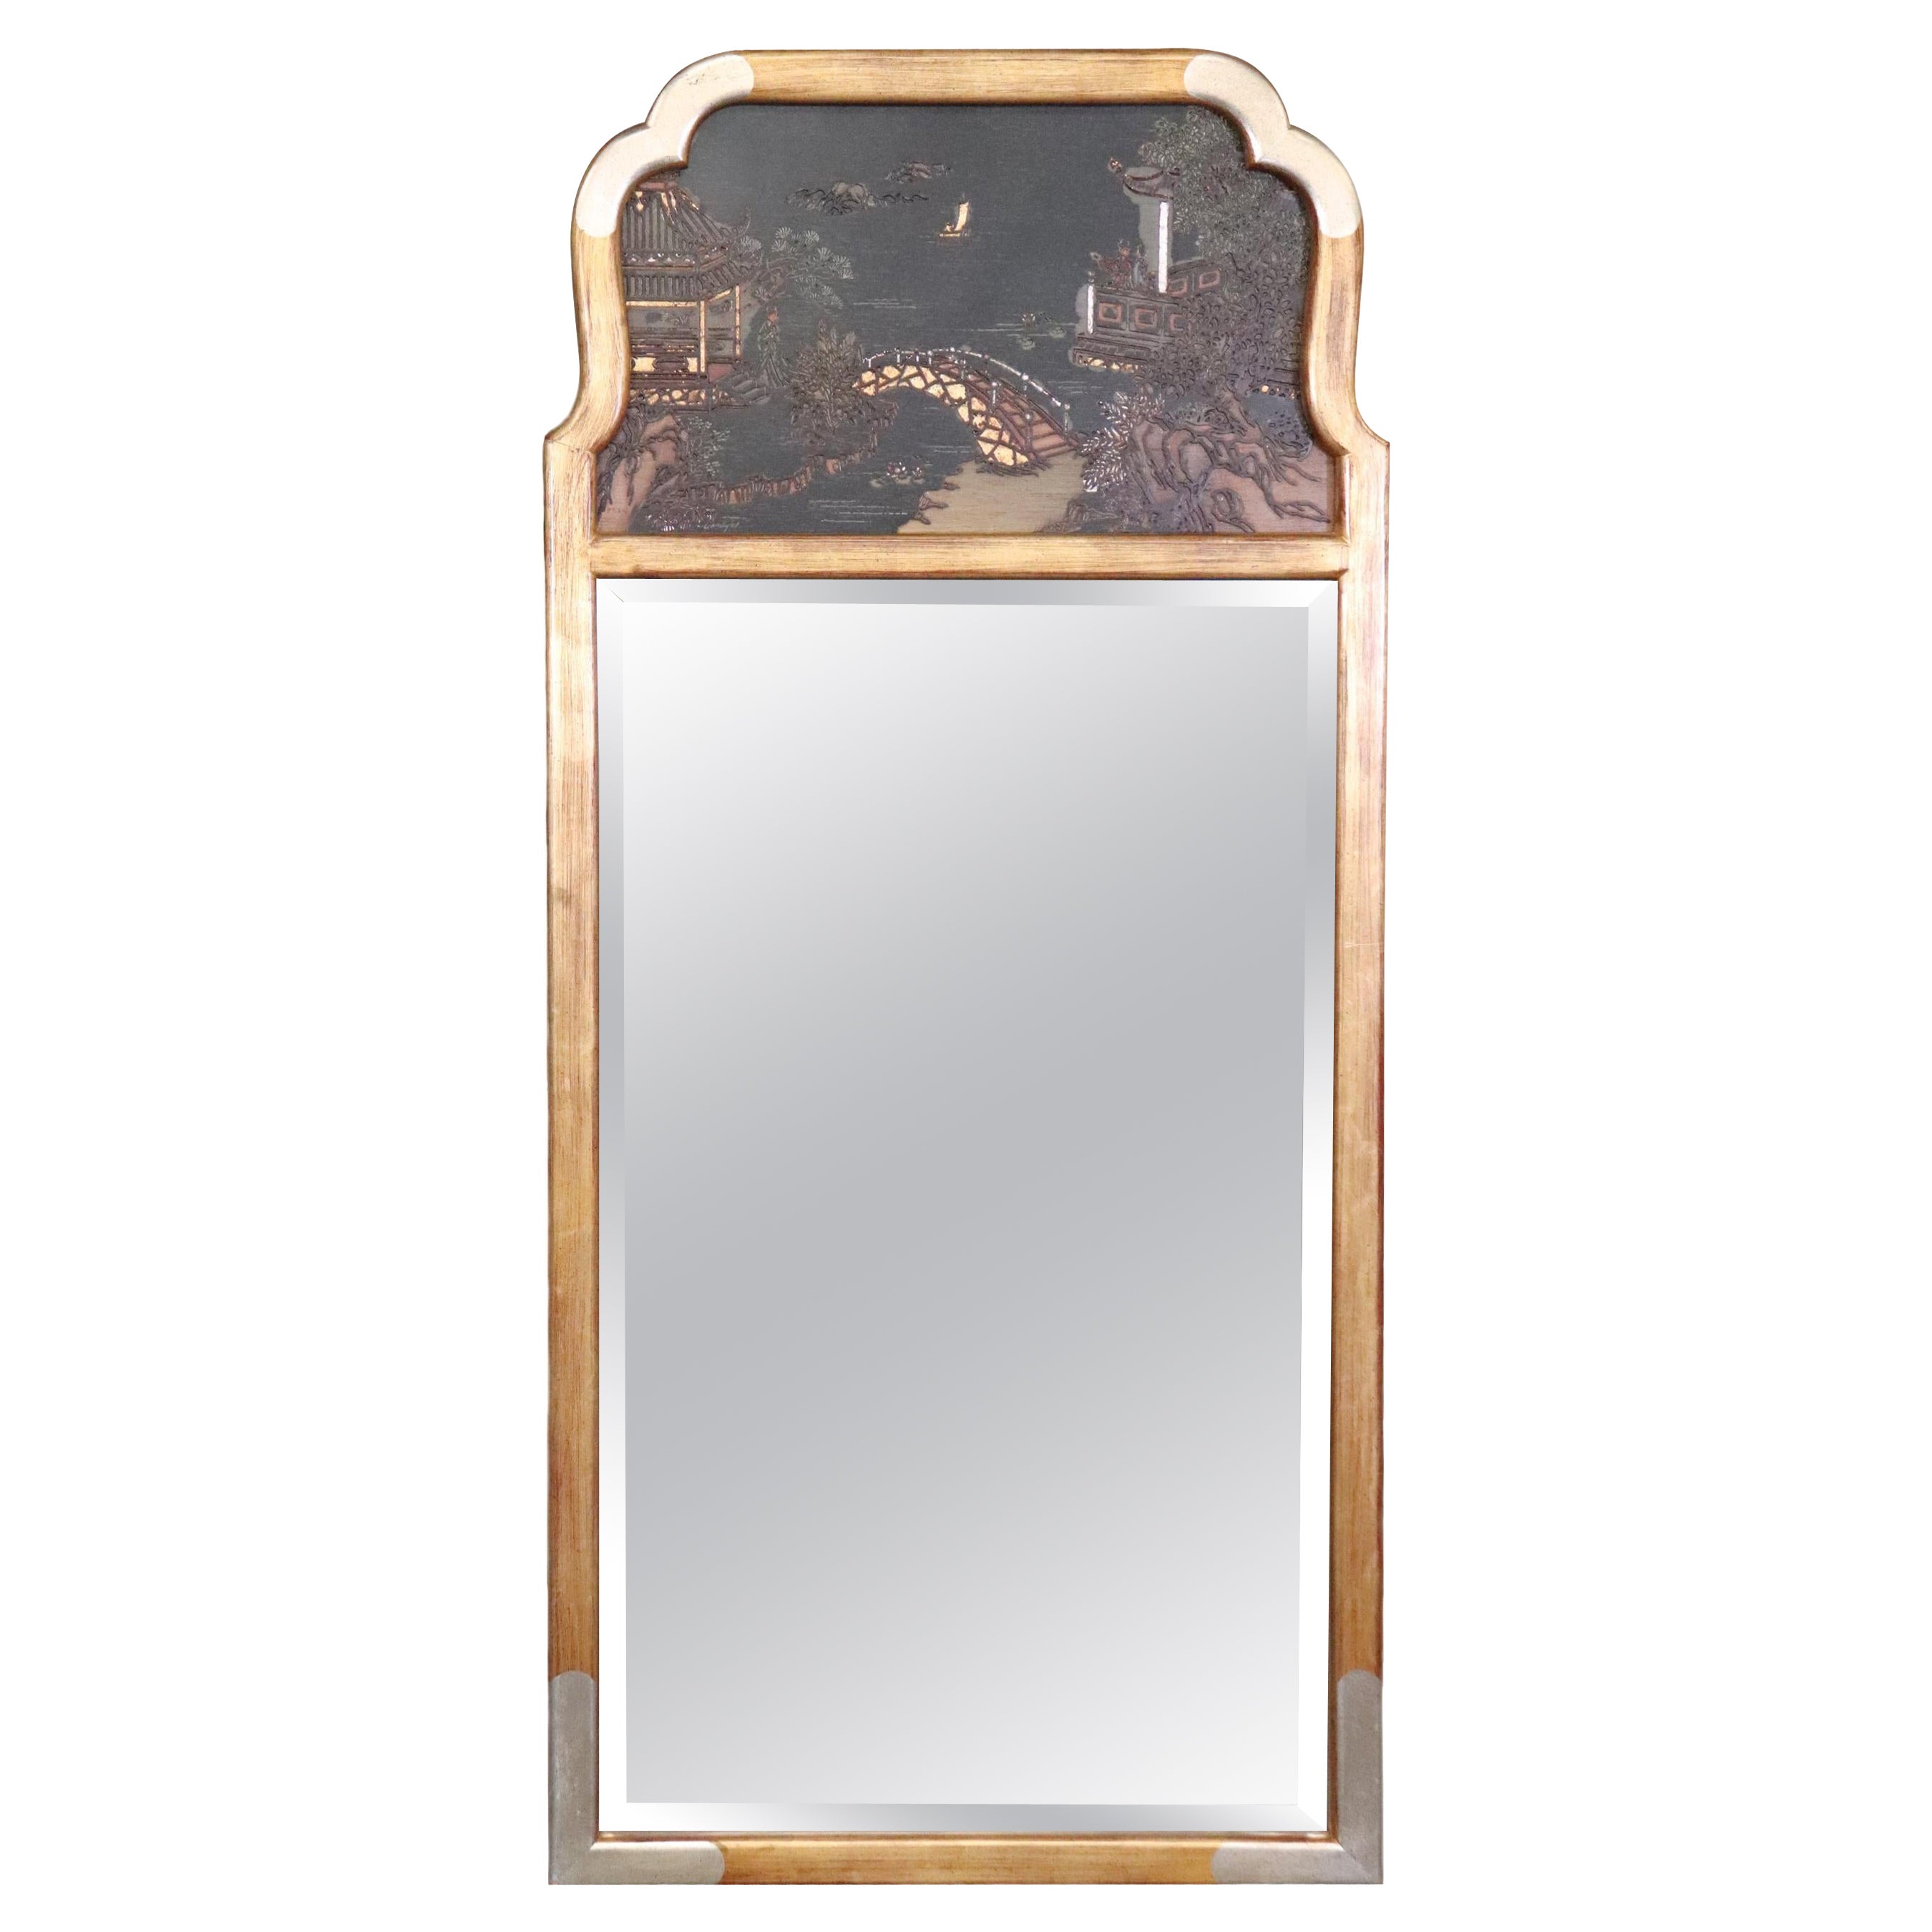 Magnifique miroir chinoiserie LaBarge avec feuille d'or et lignes sophistiquées